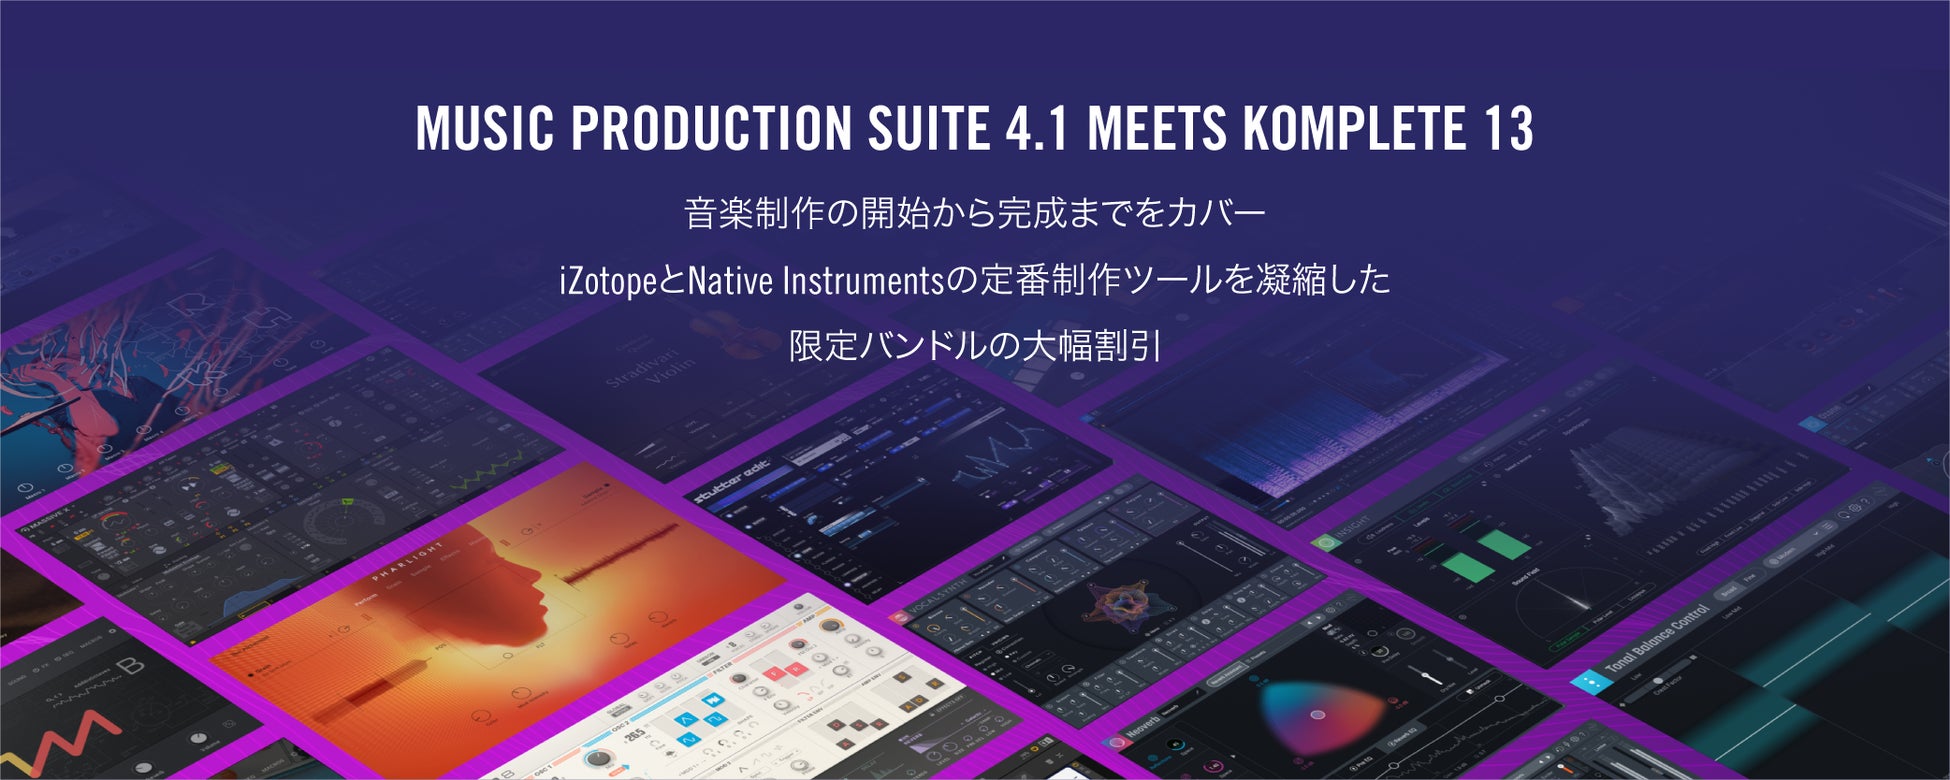 最大級のオンライン音楽教室「フォニム」が新たに福井新聞社と業務提携、音楽教育のDX推進へ協業開始